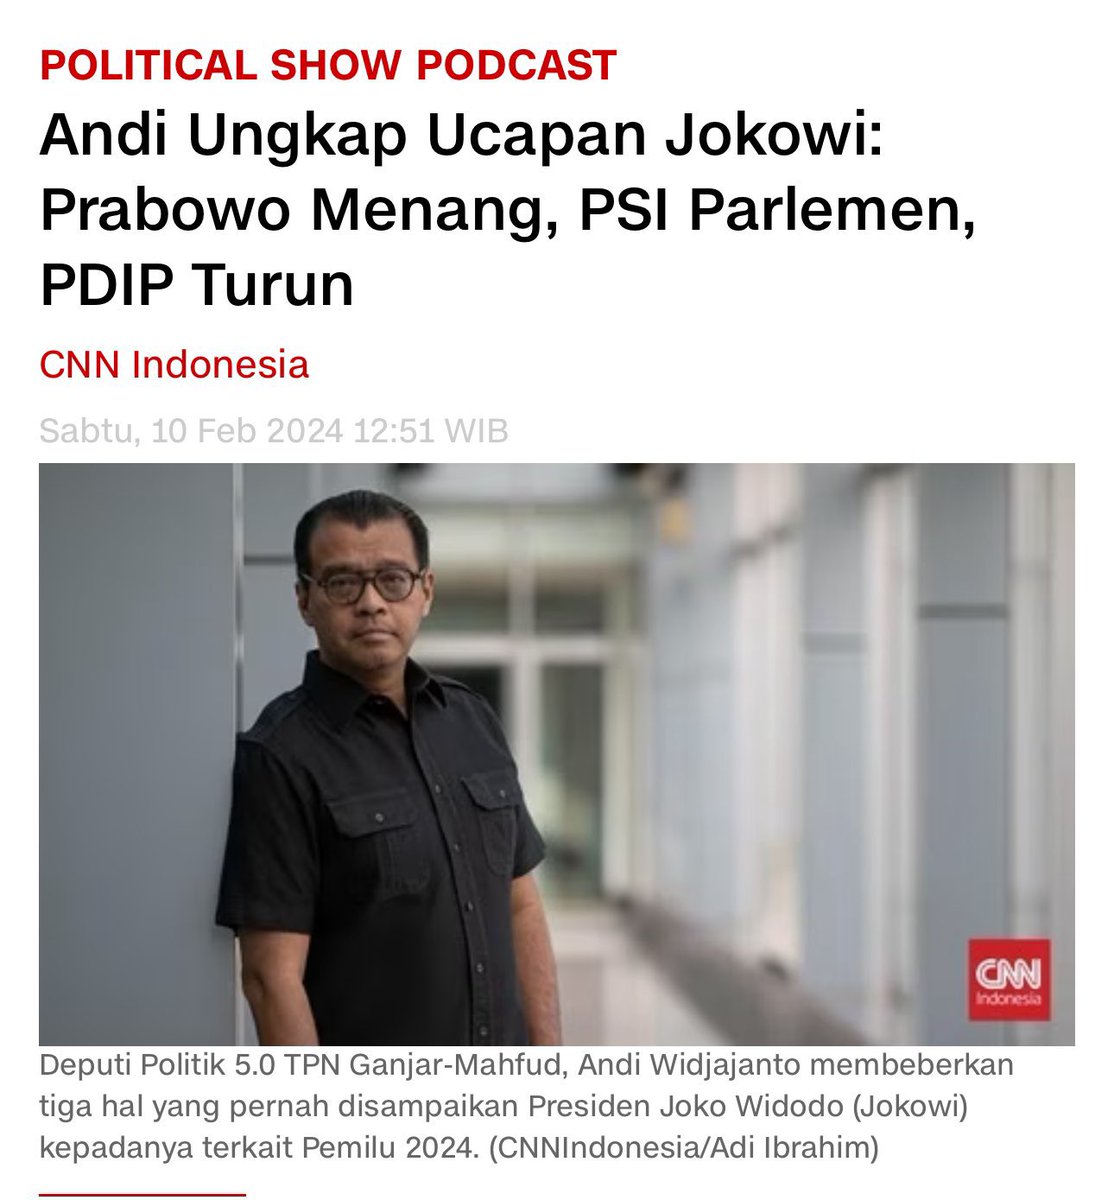 Sebelum Andi Widjoyanto mengungkap ke publik, saya sudah dapat info tentang 3 keinginan Presiden Jokowi terkait Pemilu 2024 ini. Awal Januari saya sudah diberi tahu, sebelum podcast yg viral itu. Tapi saya masih agak ragu apakah mungkin Jokowi akan mewujudkan 3 keinginan…